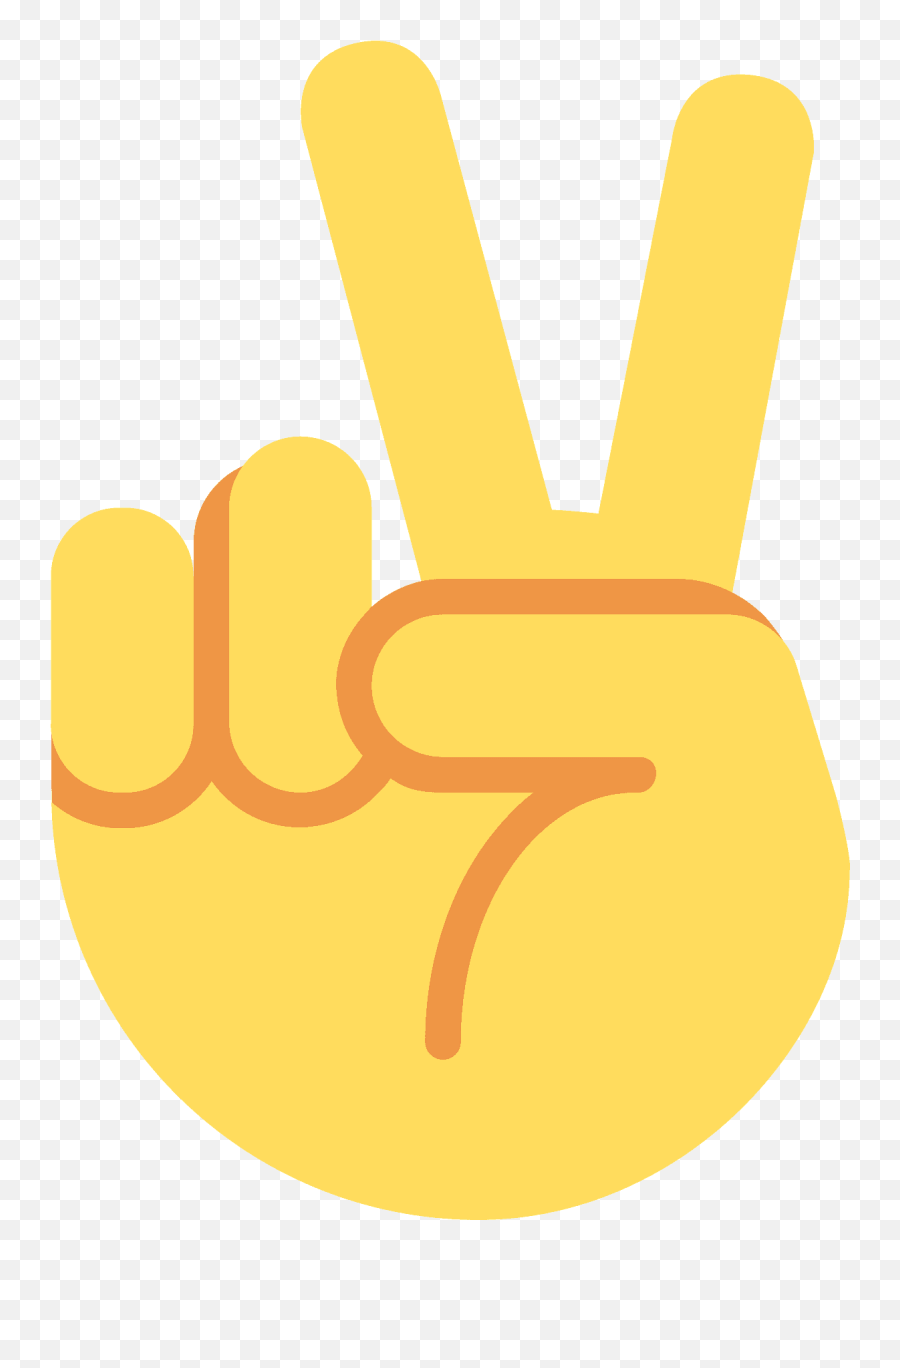 Victory Hand Emoji - Que Significa Este Emoji,Peace Sign Emoji